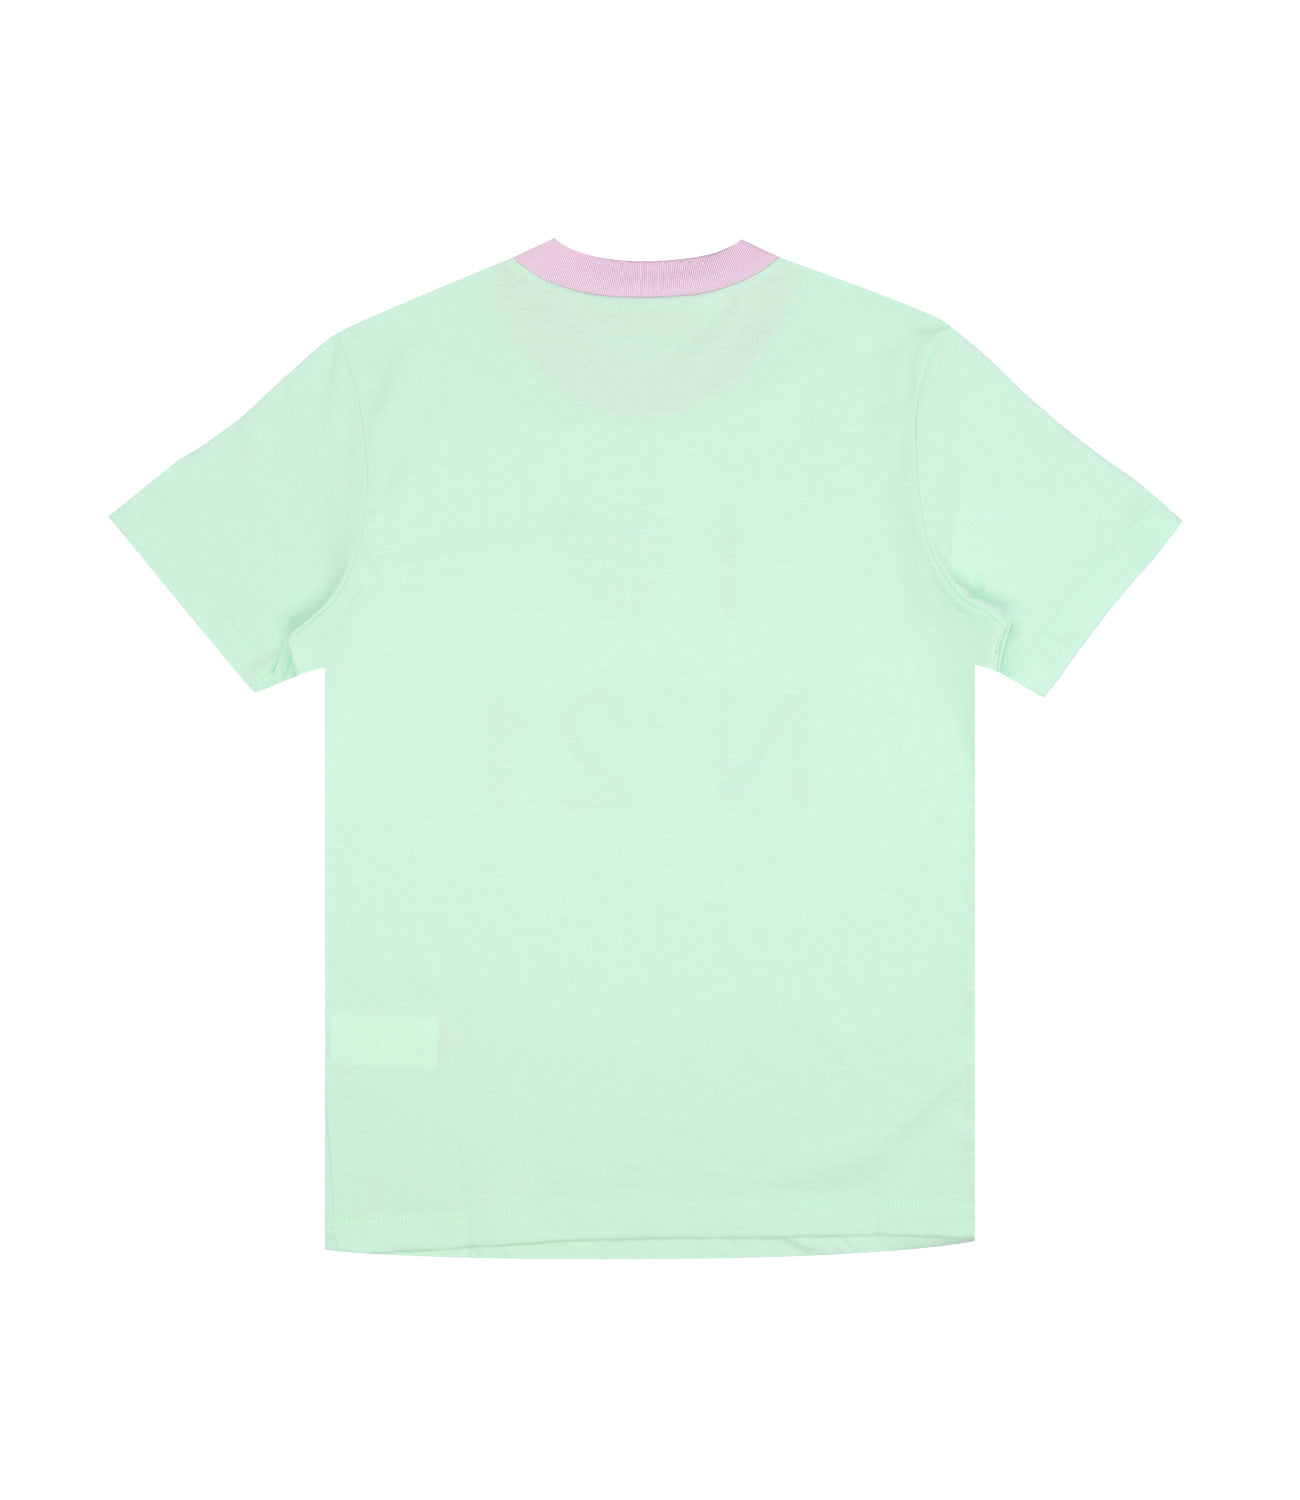 N 21 Kids | Aqua Green T-Shirt